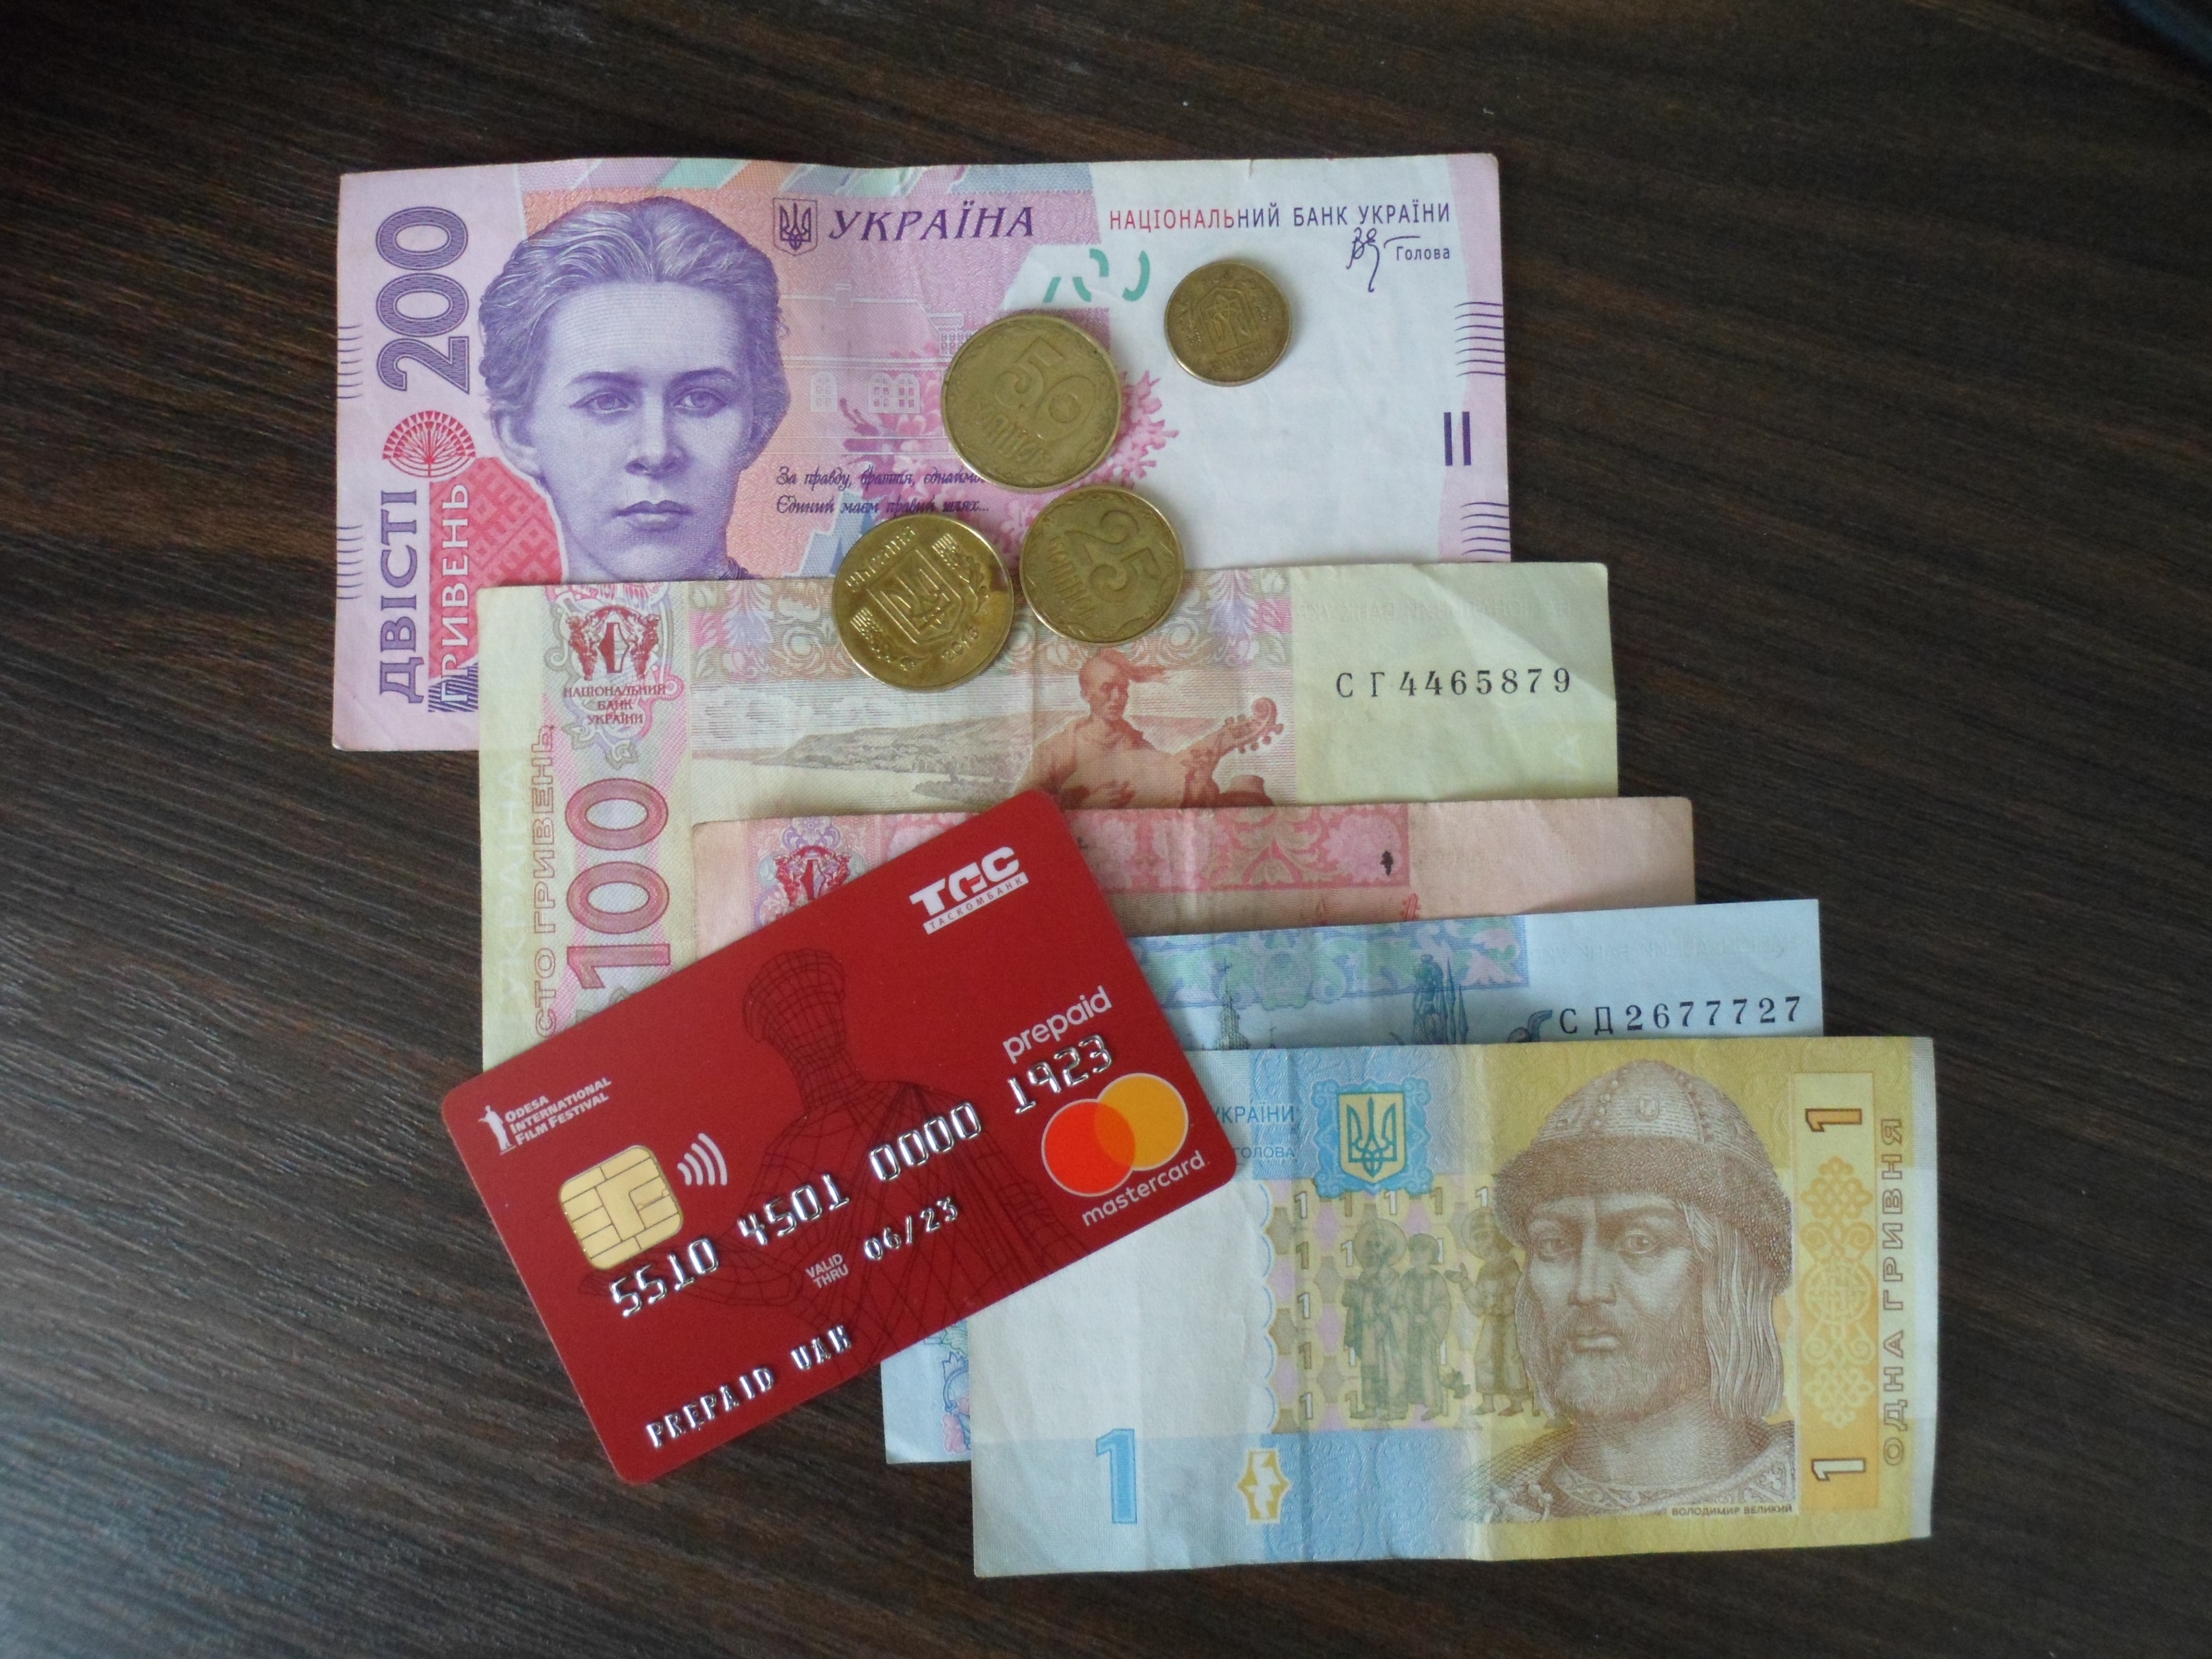 Ukrainisches Geld und Festivalkarte; Foto: Falk Straub